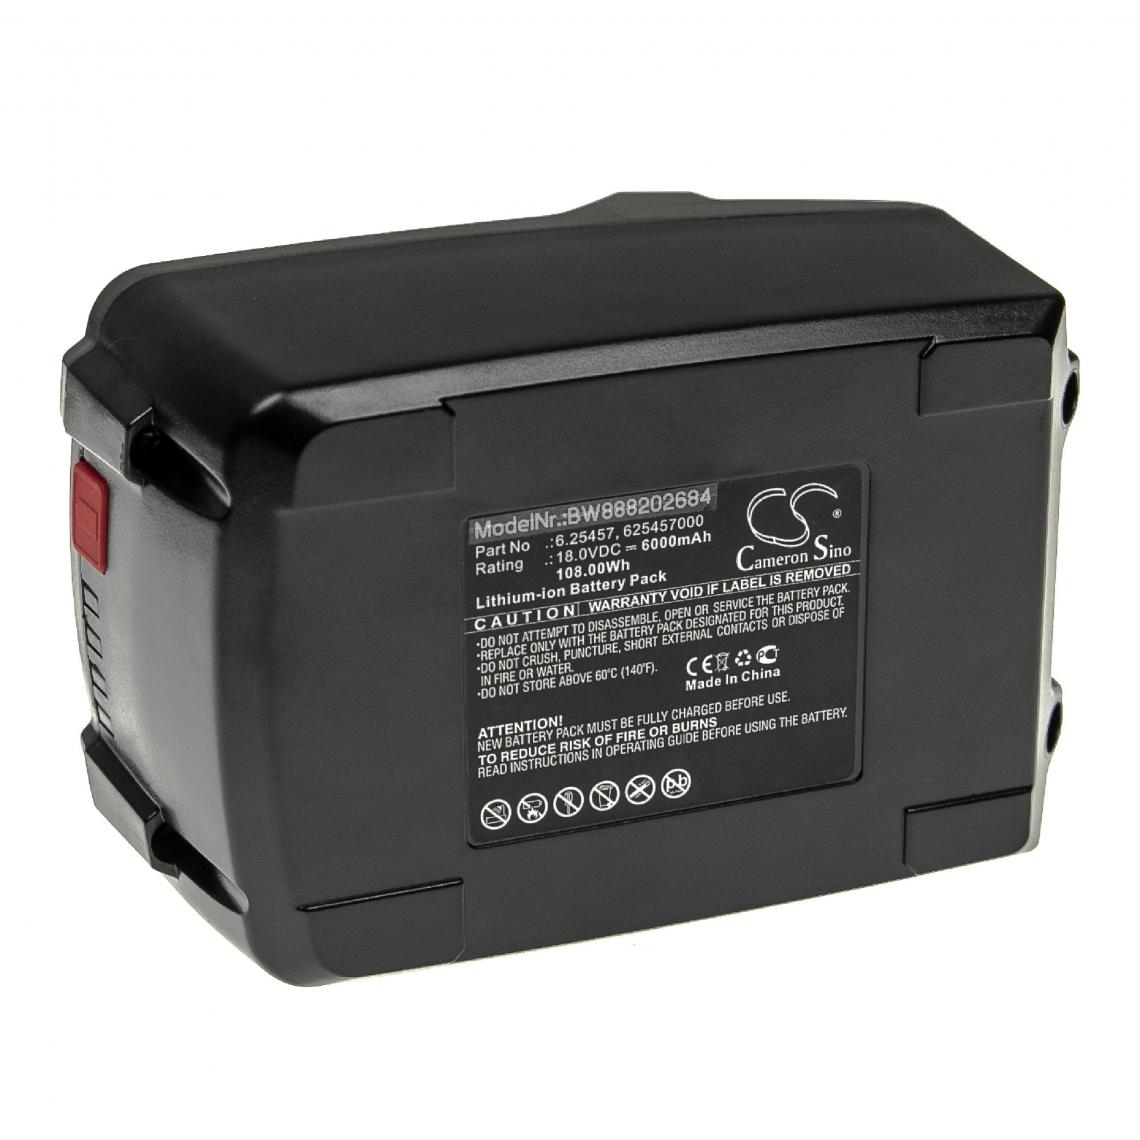 Vhbw - vhbw Batterie compatible avec Birchmeier REA 15 AC1, REB 15 AC1, REC 15 AC1, REC 15 AC2 outil électrique (6000mAh Li-ion 18 V) - Autre appareil de mesure